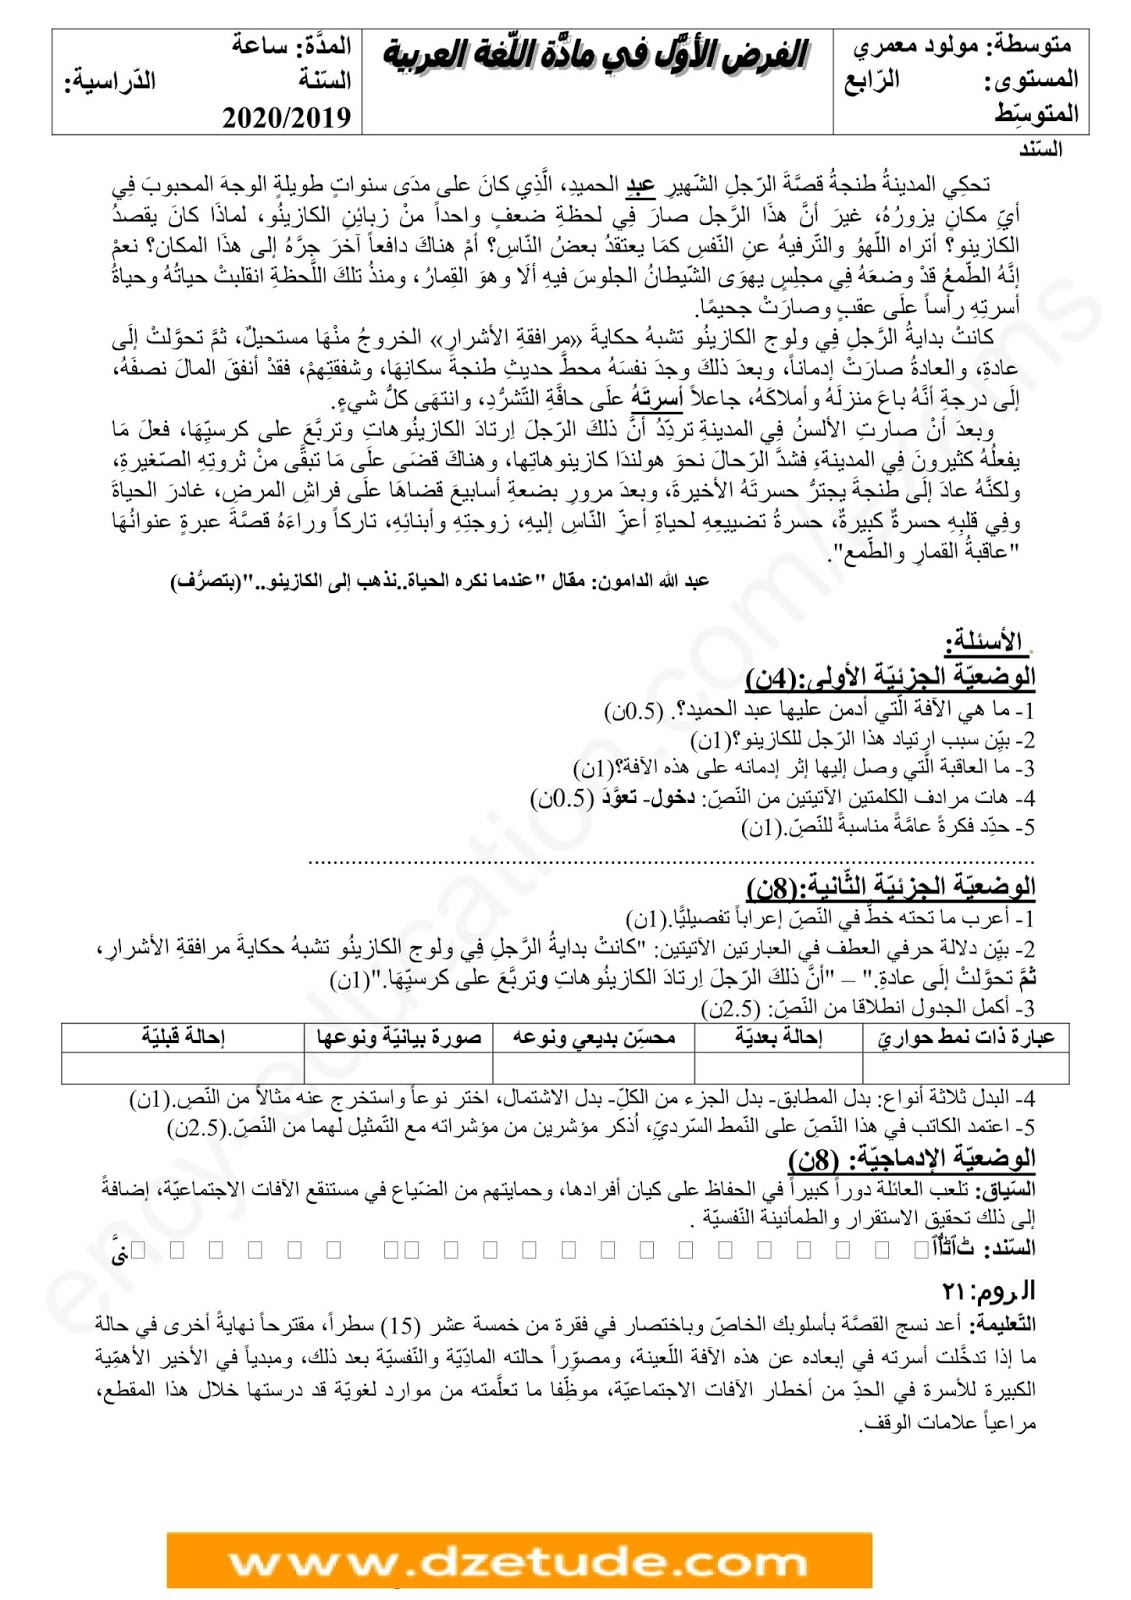 فرض الفصل الأول في اللغة العربية للسنة الرابعة متوسط - الجيل الثاني نموذج 6